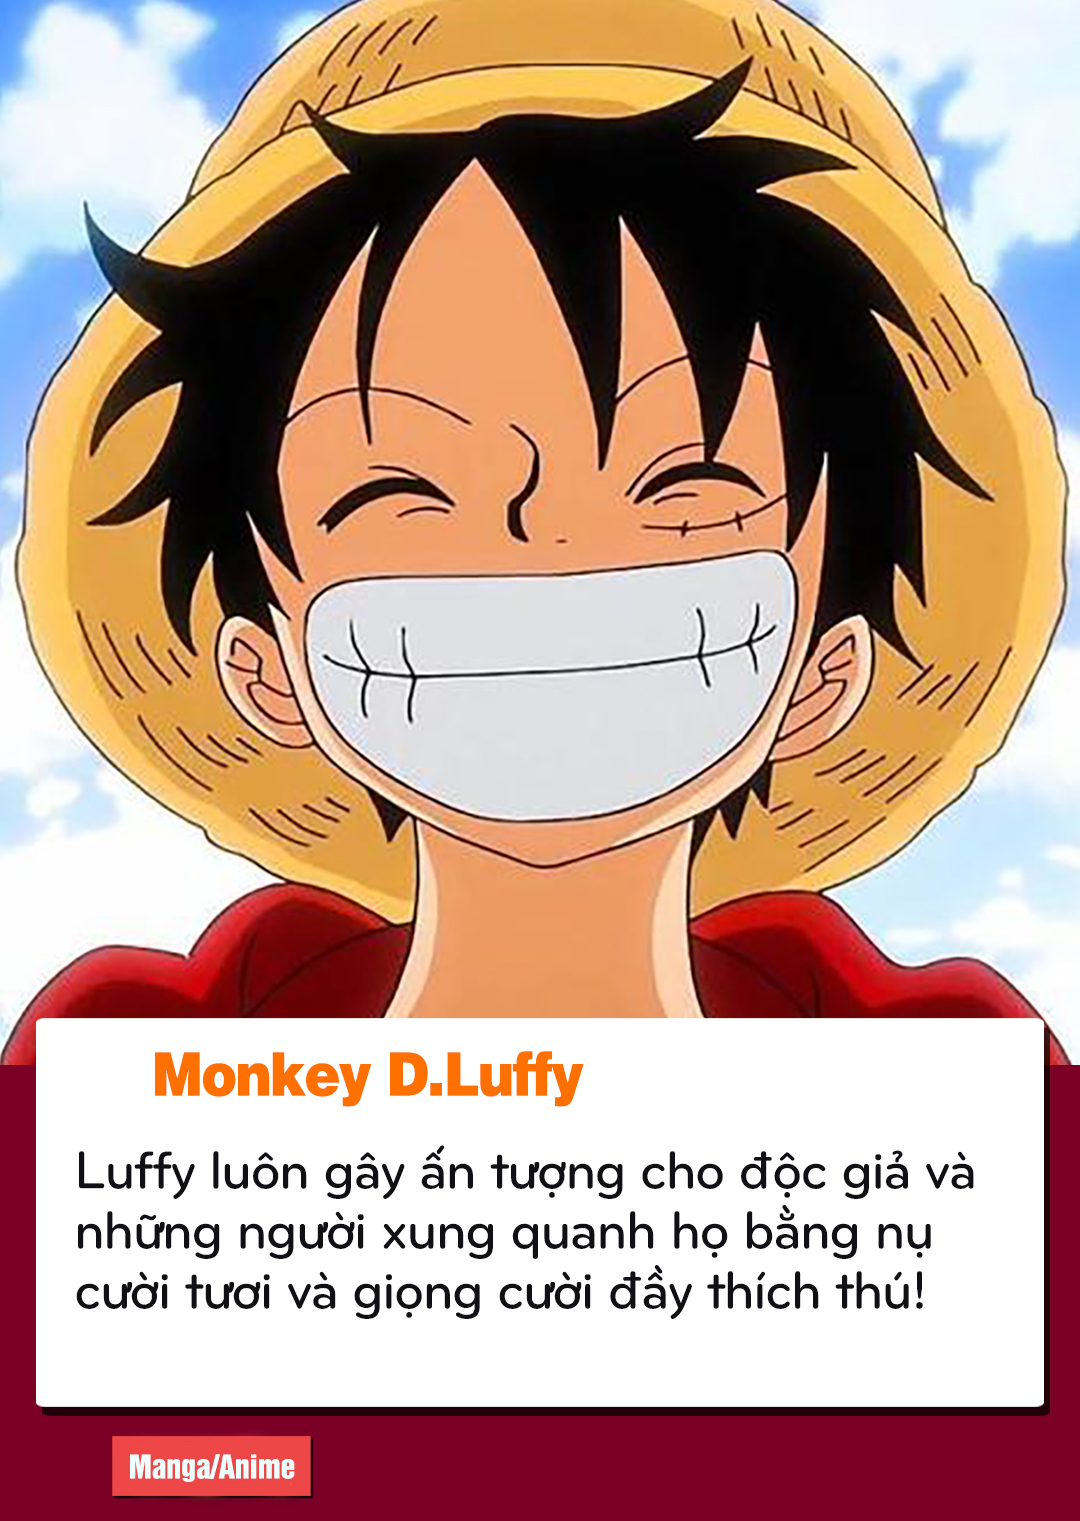 Nếu bạn là một fan hâm mộ của One Piece, hãy xem hình ảnh về Luffy để tìm hiểu thêm về nhân vật hấp dẫn này.